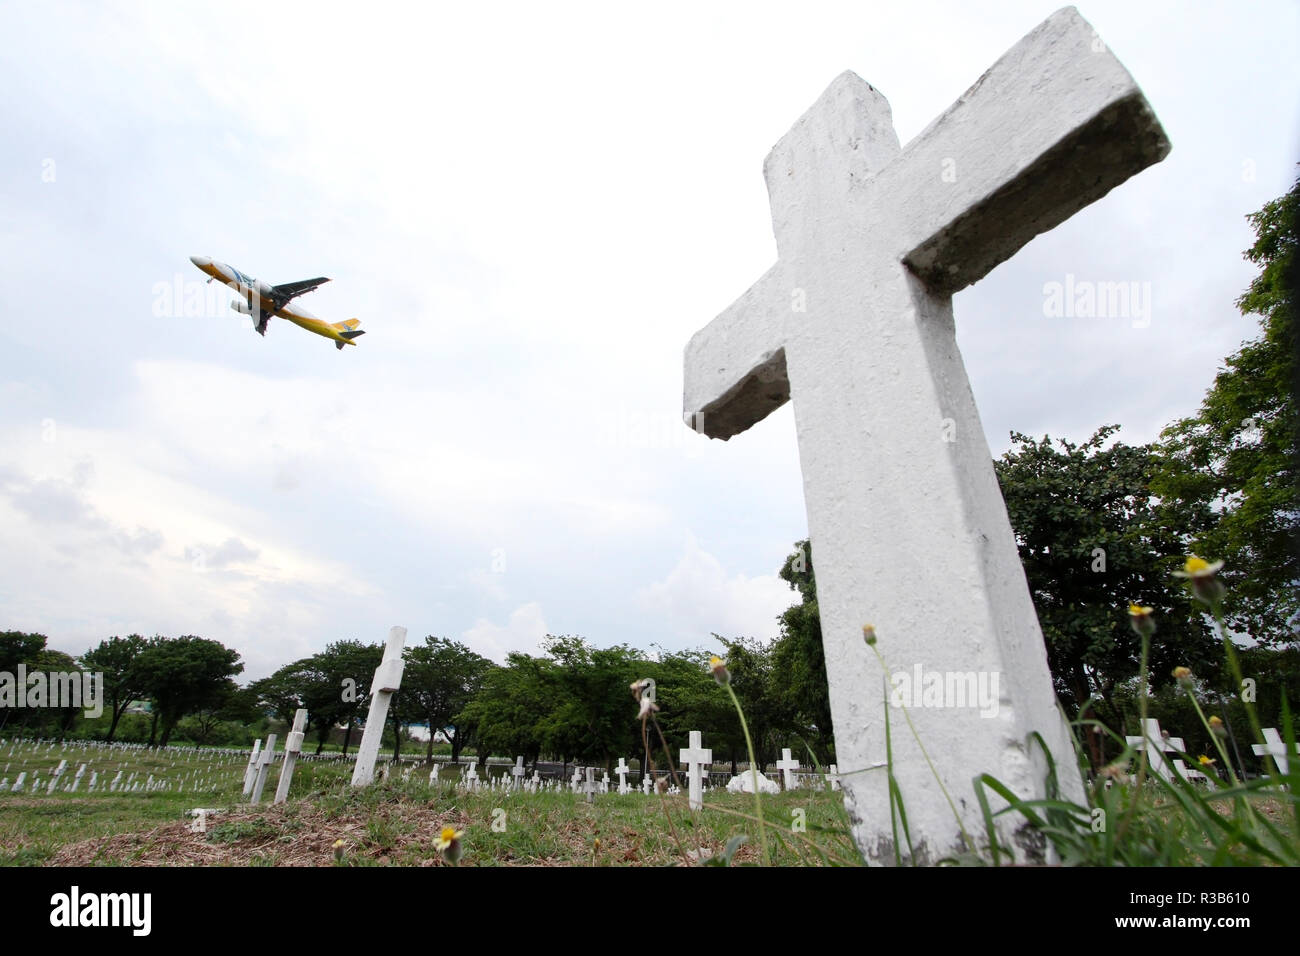 Un avion commercial est vus en vol au-dessus du cimetière des héros, également connu sous le nom de Libingan ng mga Bayani, à Taguig City, au sud de Manille, Philippines. Banque D'Images